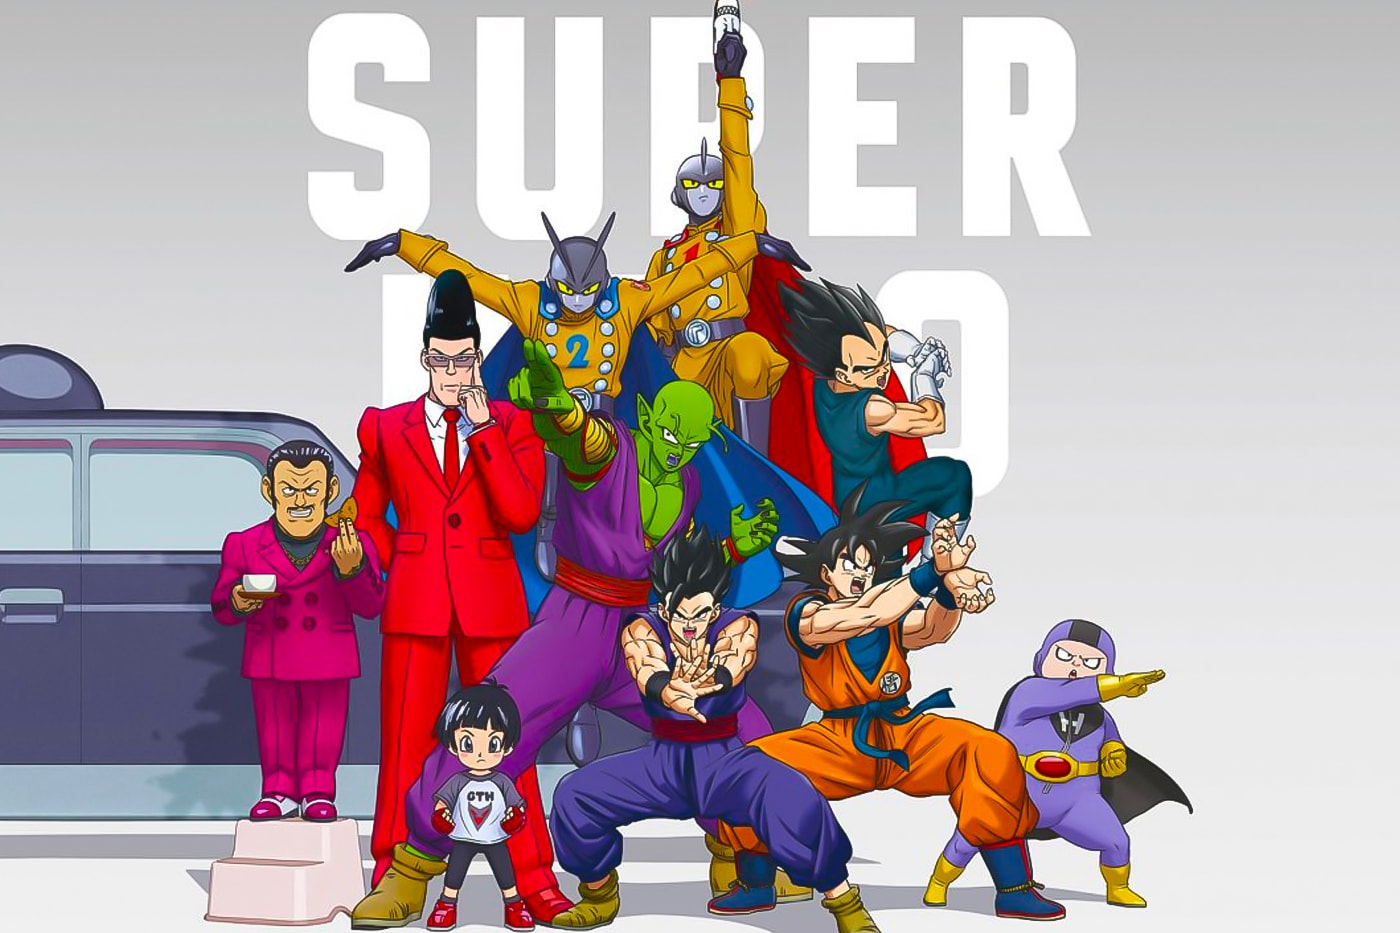 Dragon Ball Super: Super Hero recebe teaser para cenas de luta